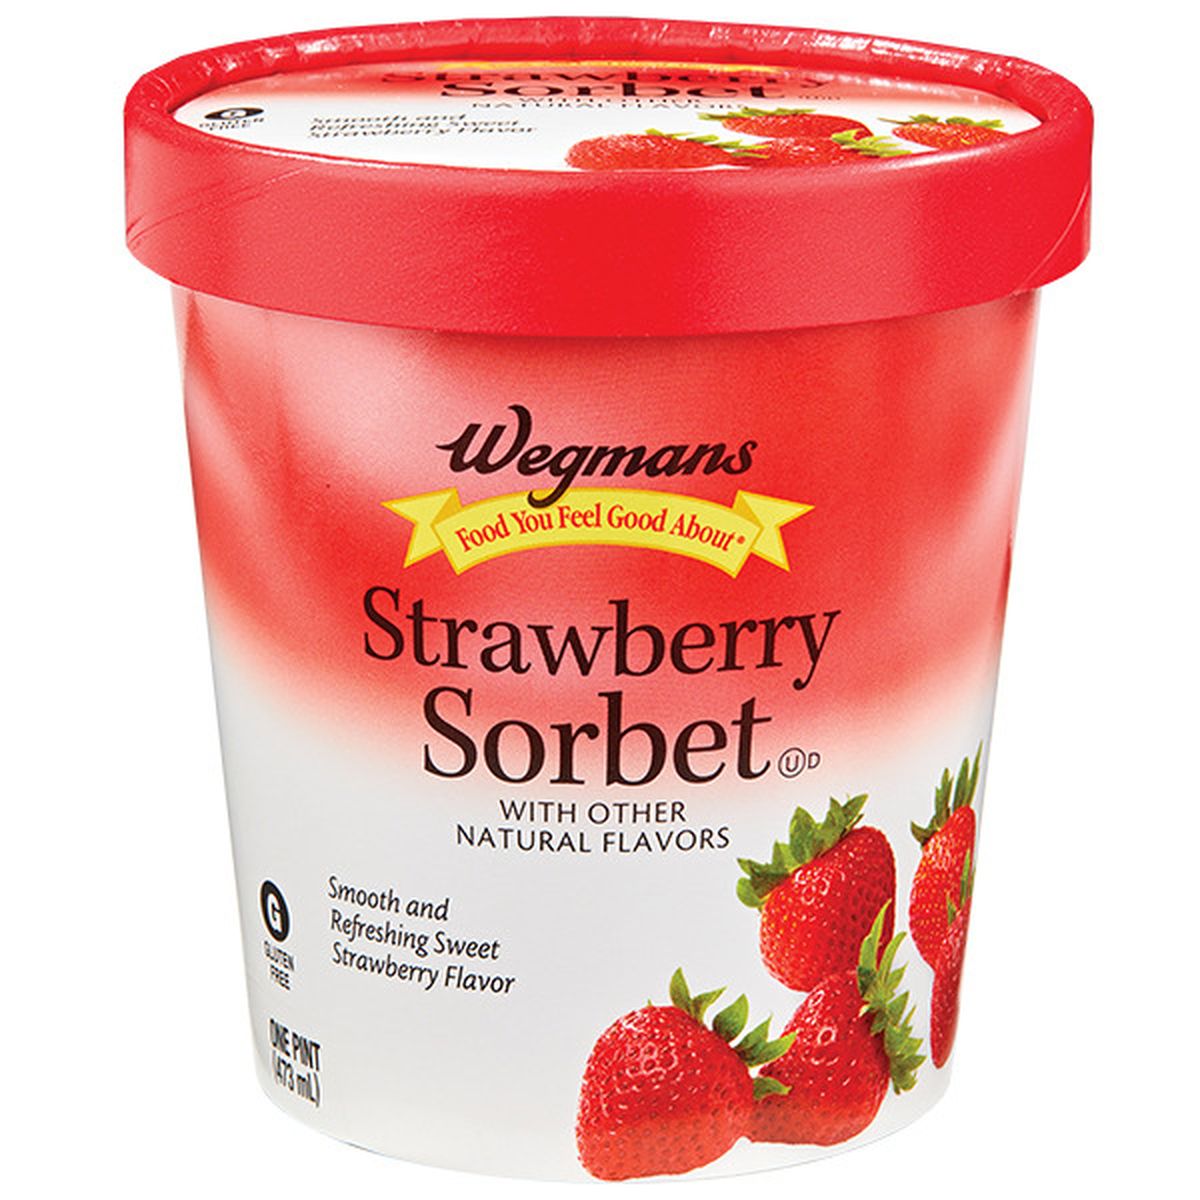 Calories in Wegmans Strawberry Sorbet